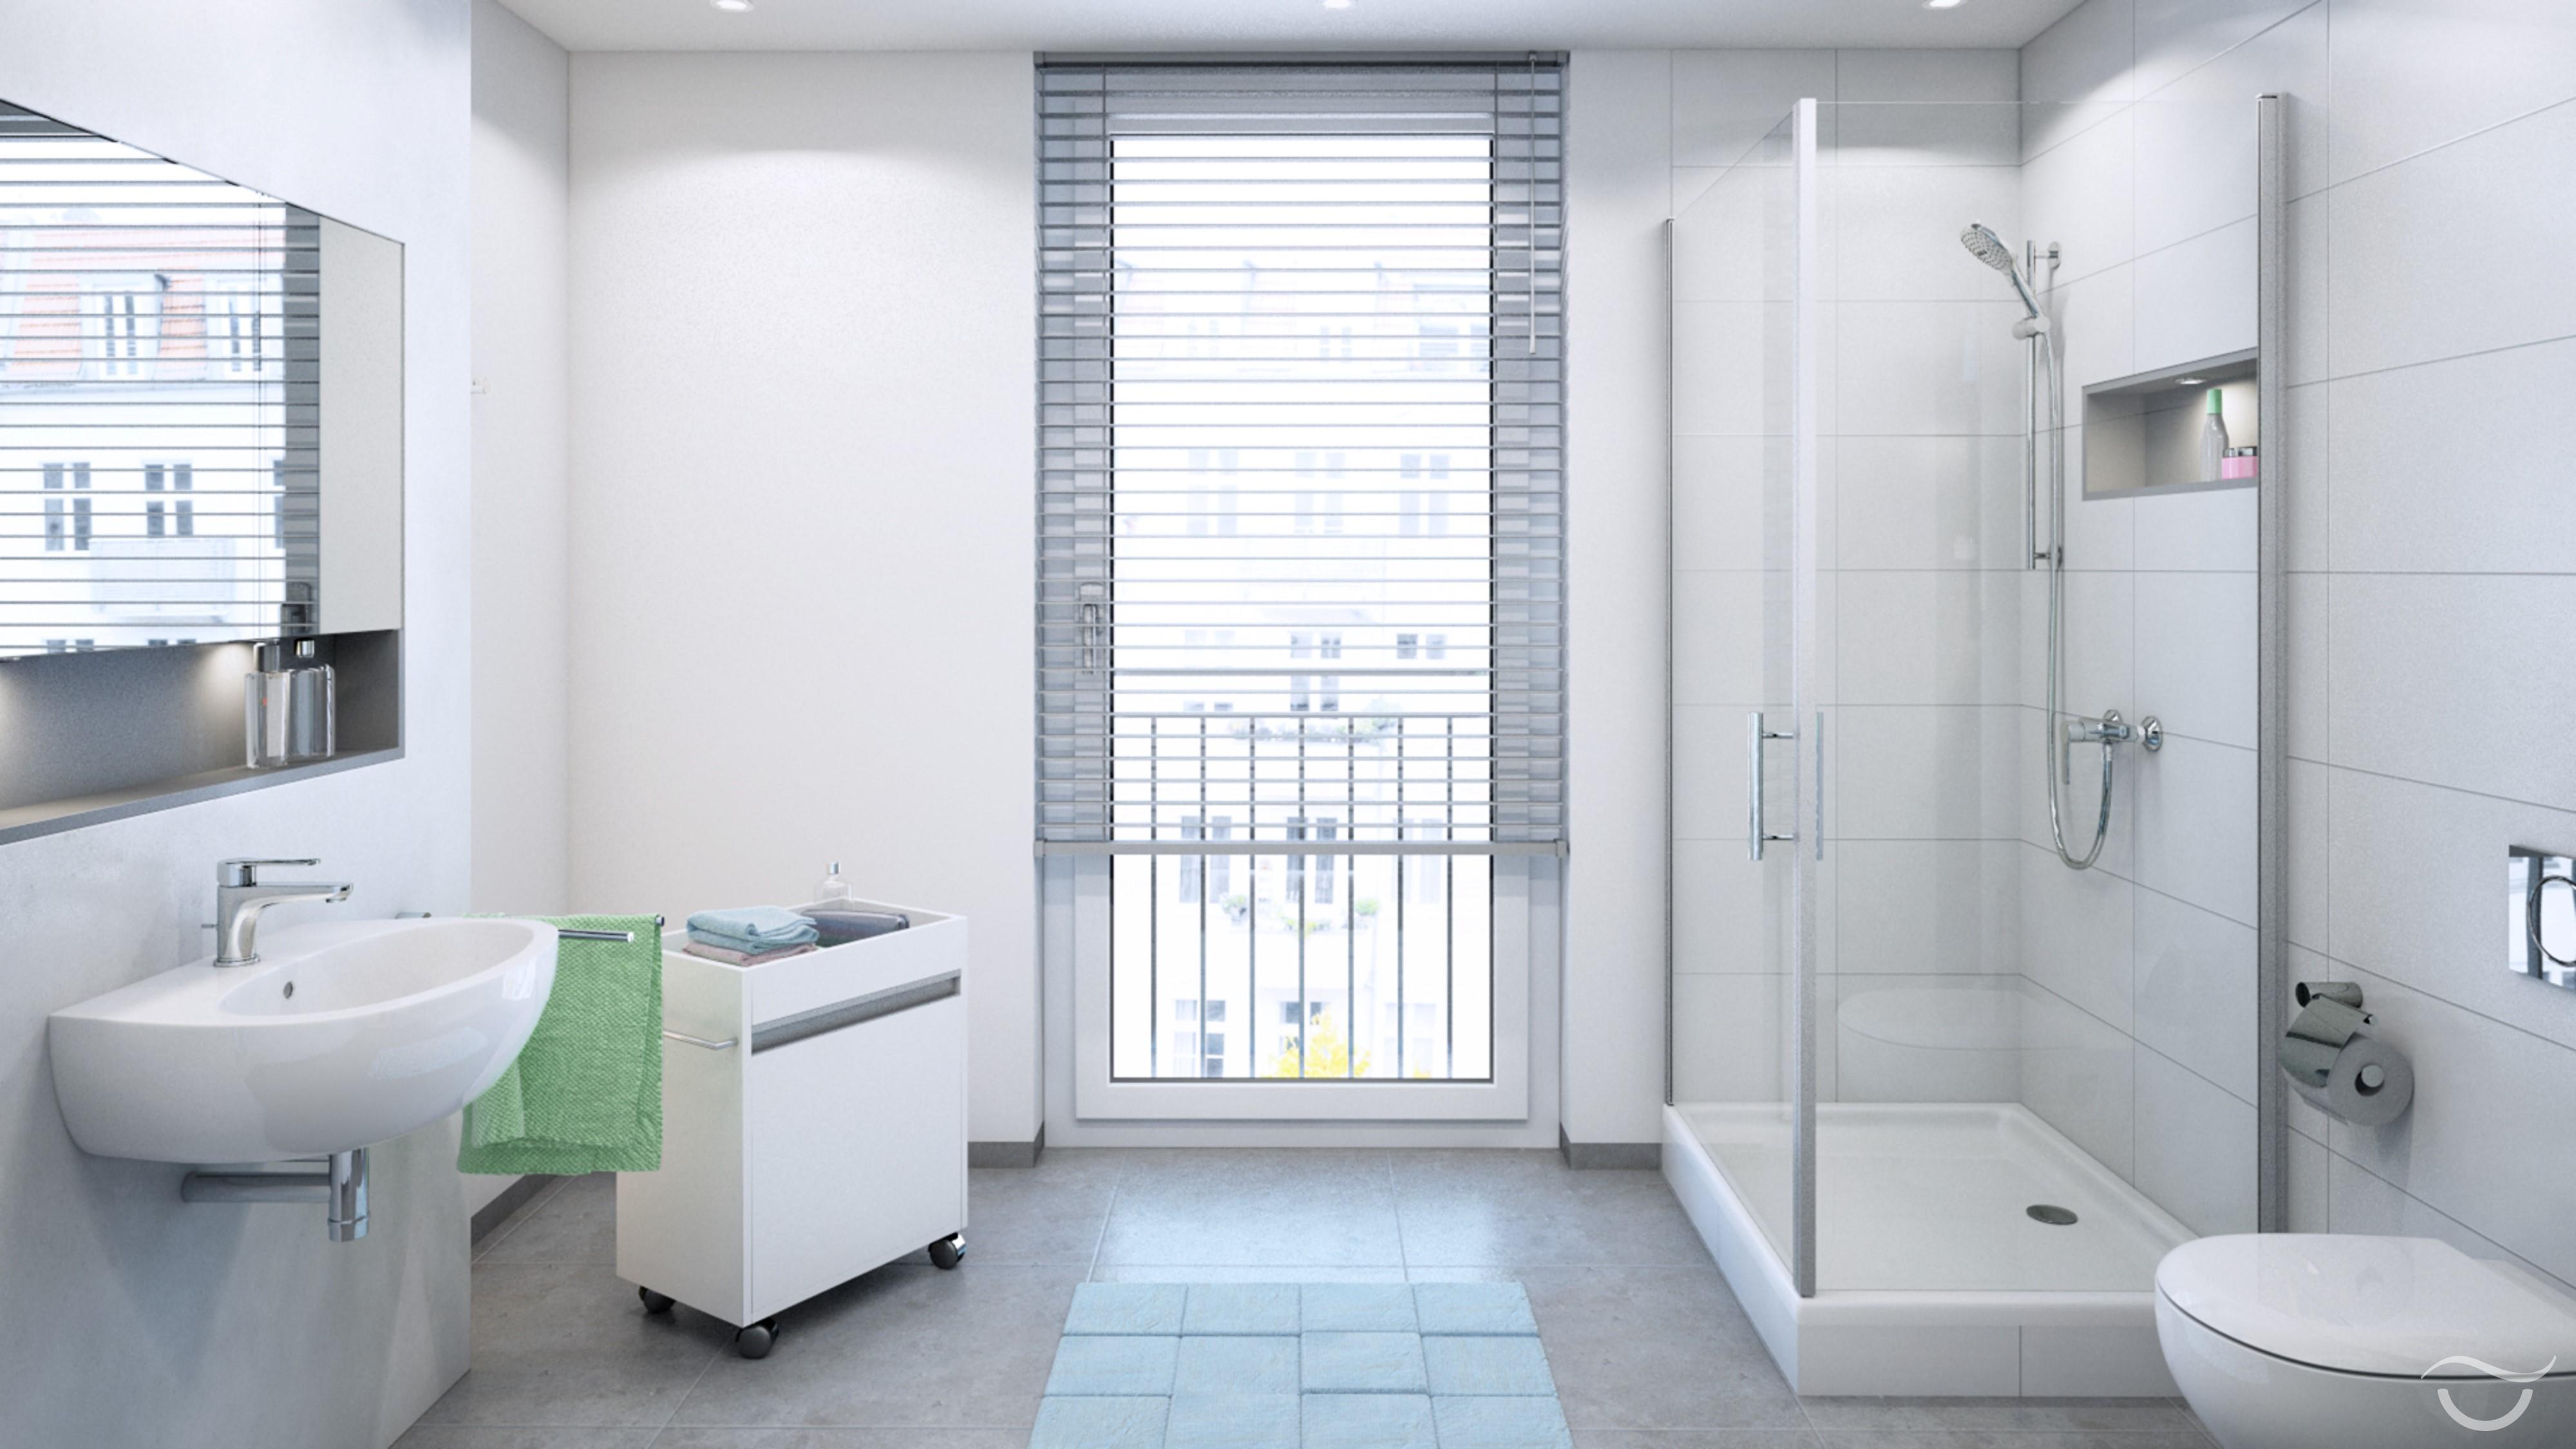 Schlichtes Design beim Stil CLASSIC CHIC #badezimmer #dusche #spiegel #einbauregal ©Banovo GmbH